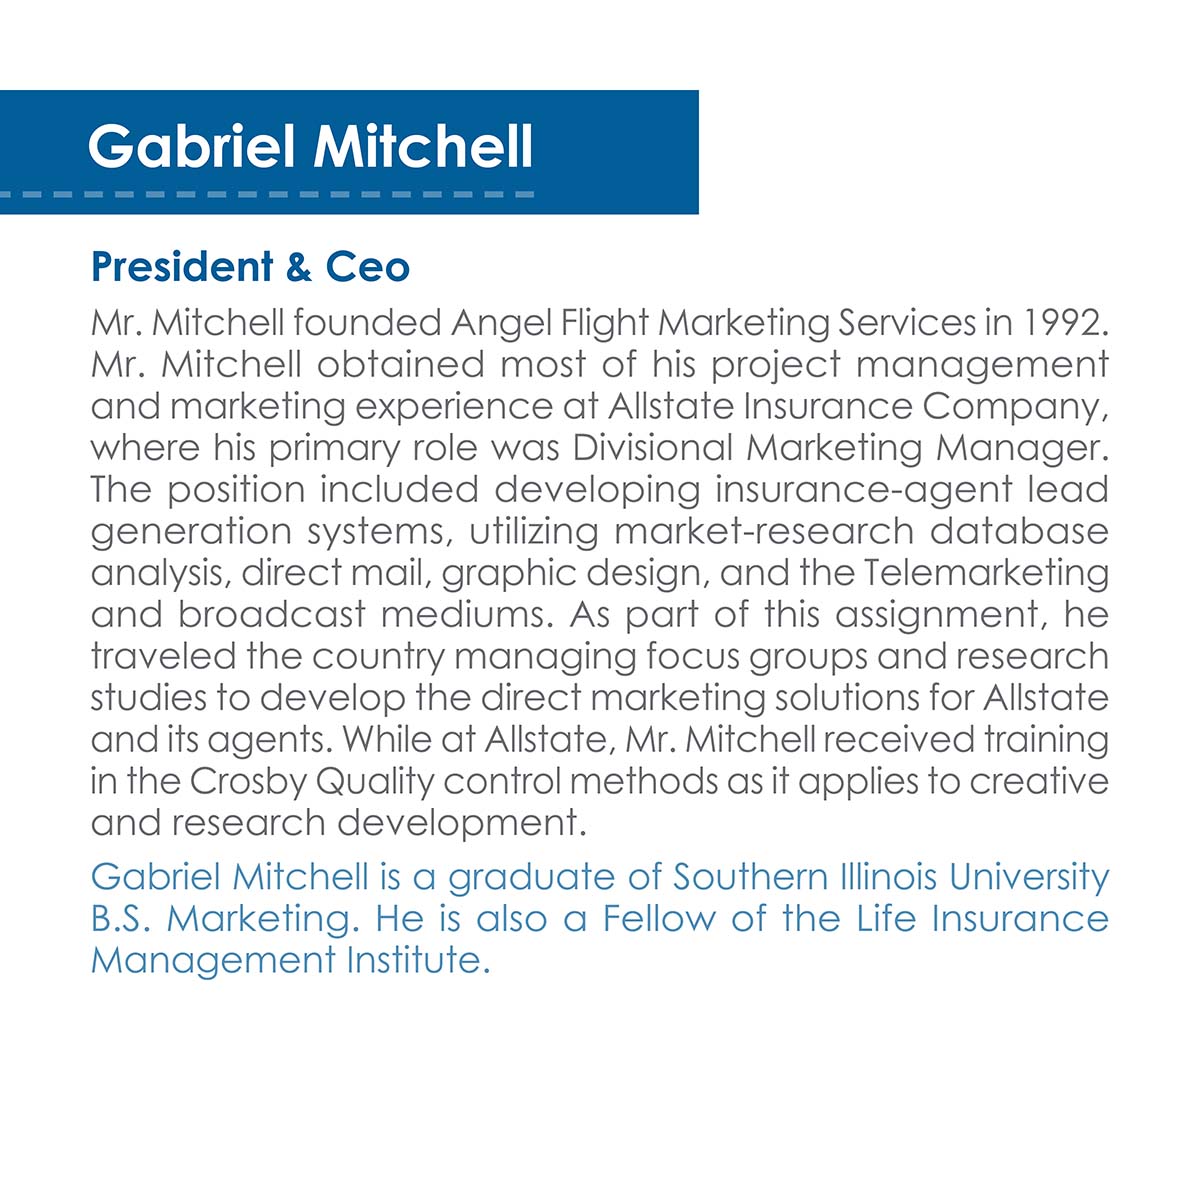 Gabriel Mitchell Bio